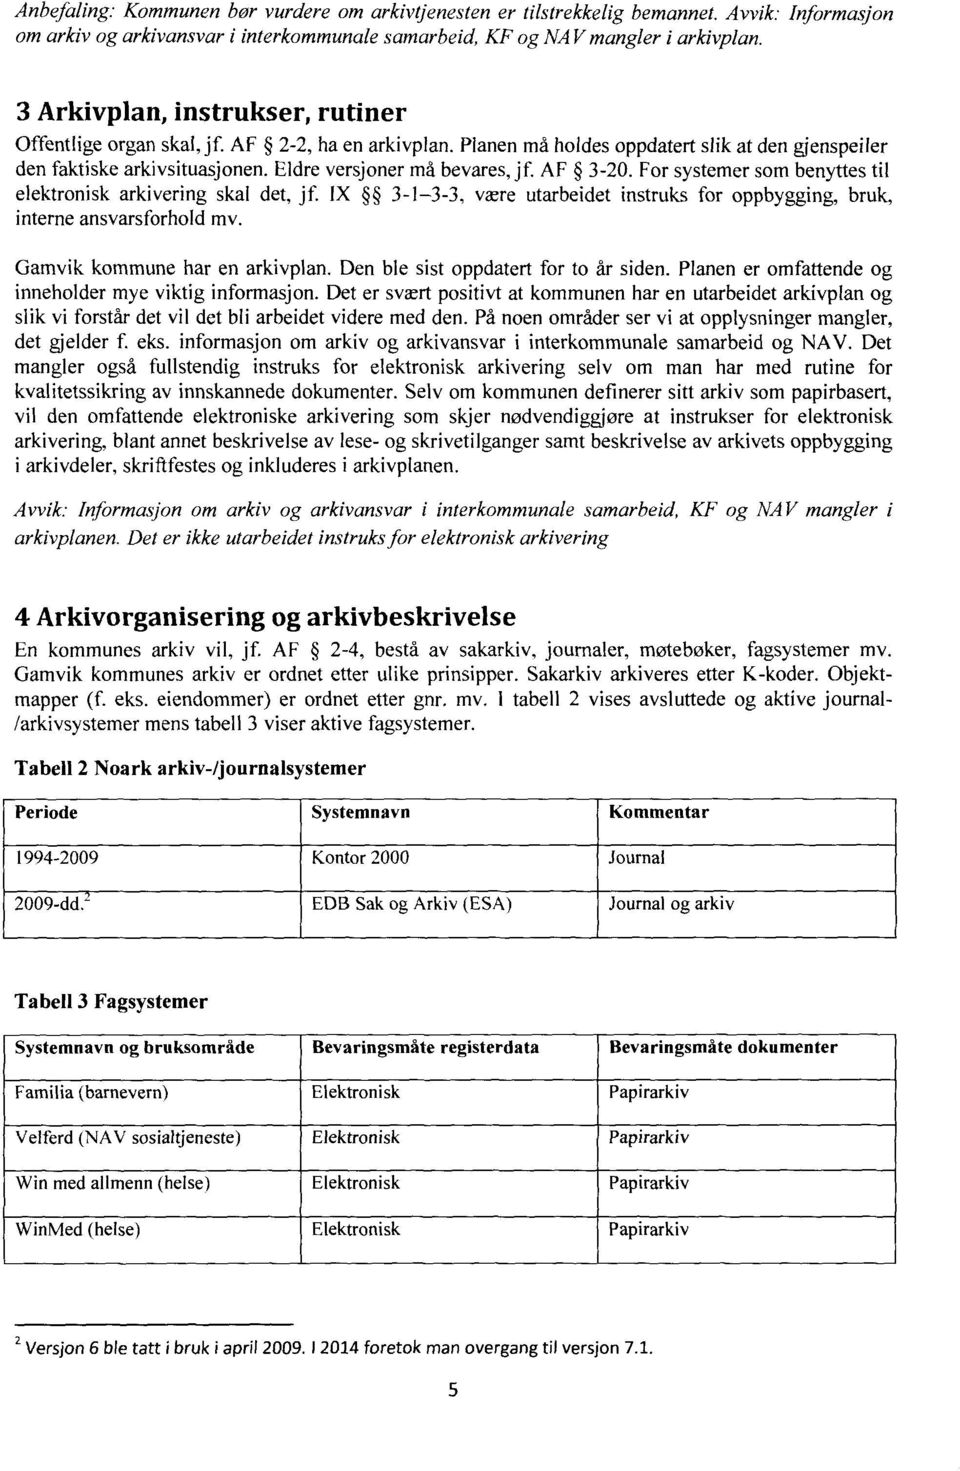 AF 3-20. For systemer som benyttes til elektronisk arkivering skal det, jf. IX 3-1-3-3, være utarbeidet instruks for oppbygging, bruk, interne ansvarsforhold mv. Gamvik kommune har en arkivplan.